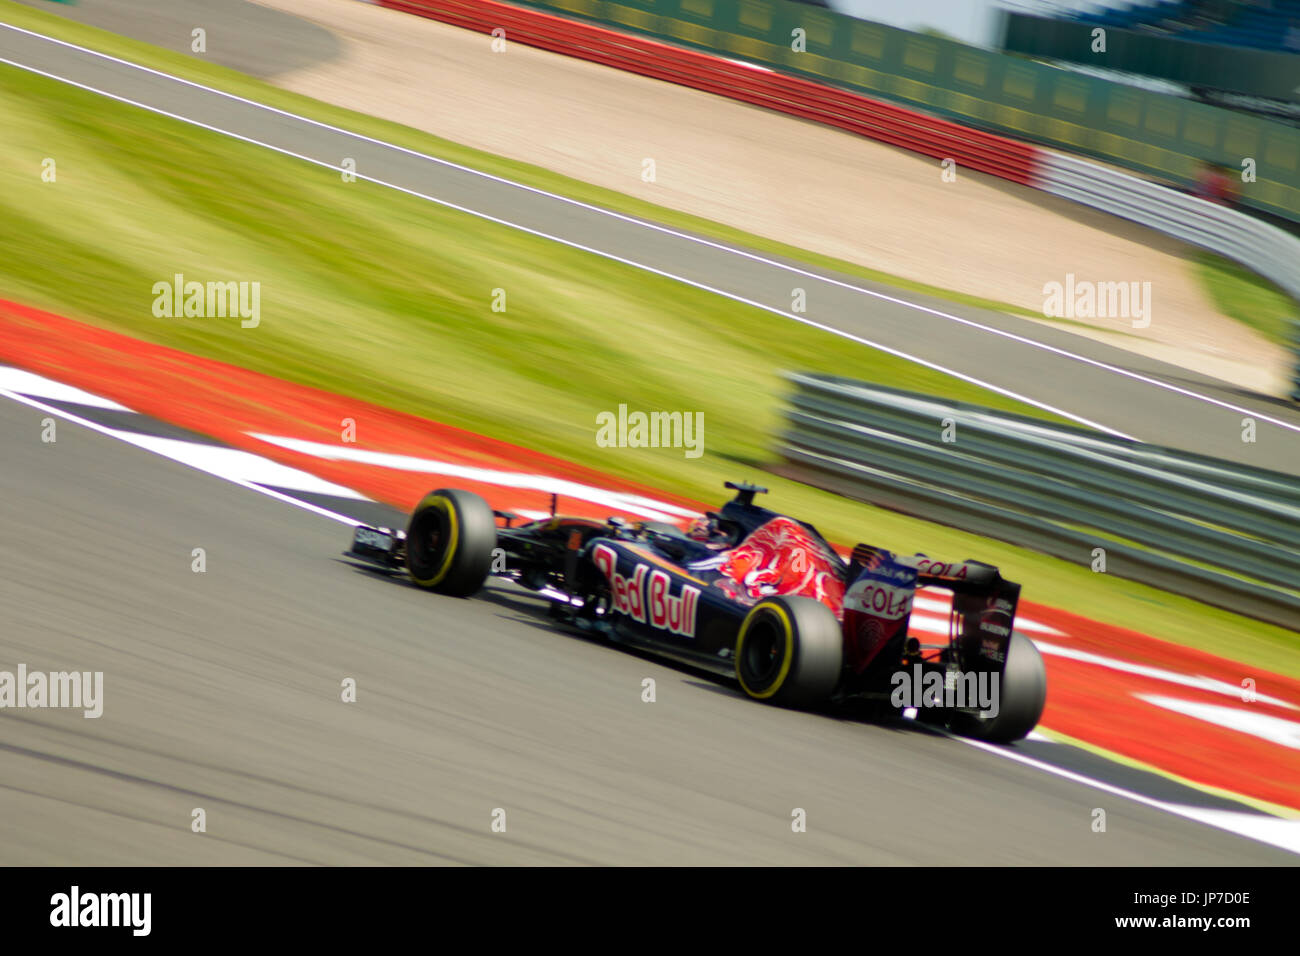 bei der die erste Ecke des Grand Prix von Silverstone circuit während der 2016 britischen Formel 1 Grand Prix Stockfoto